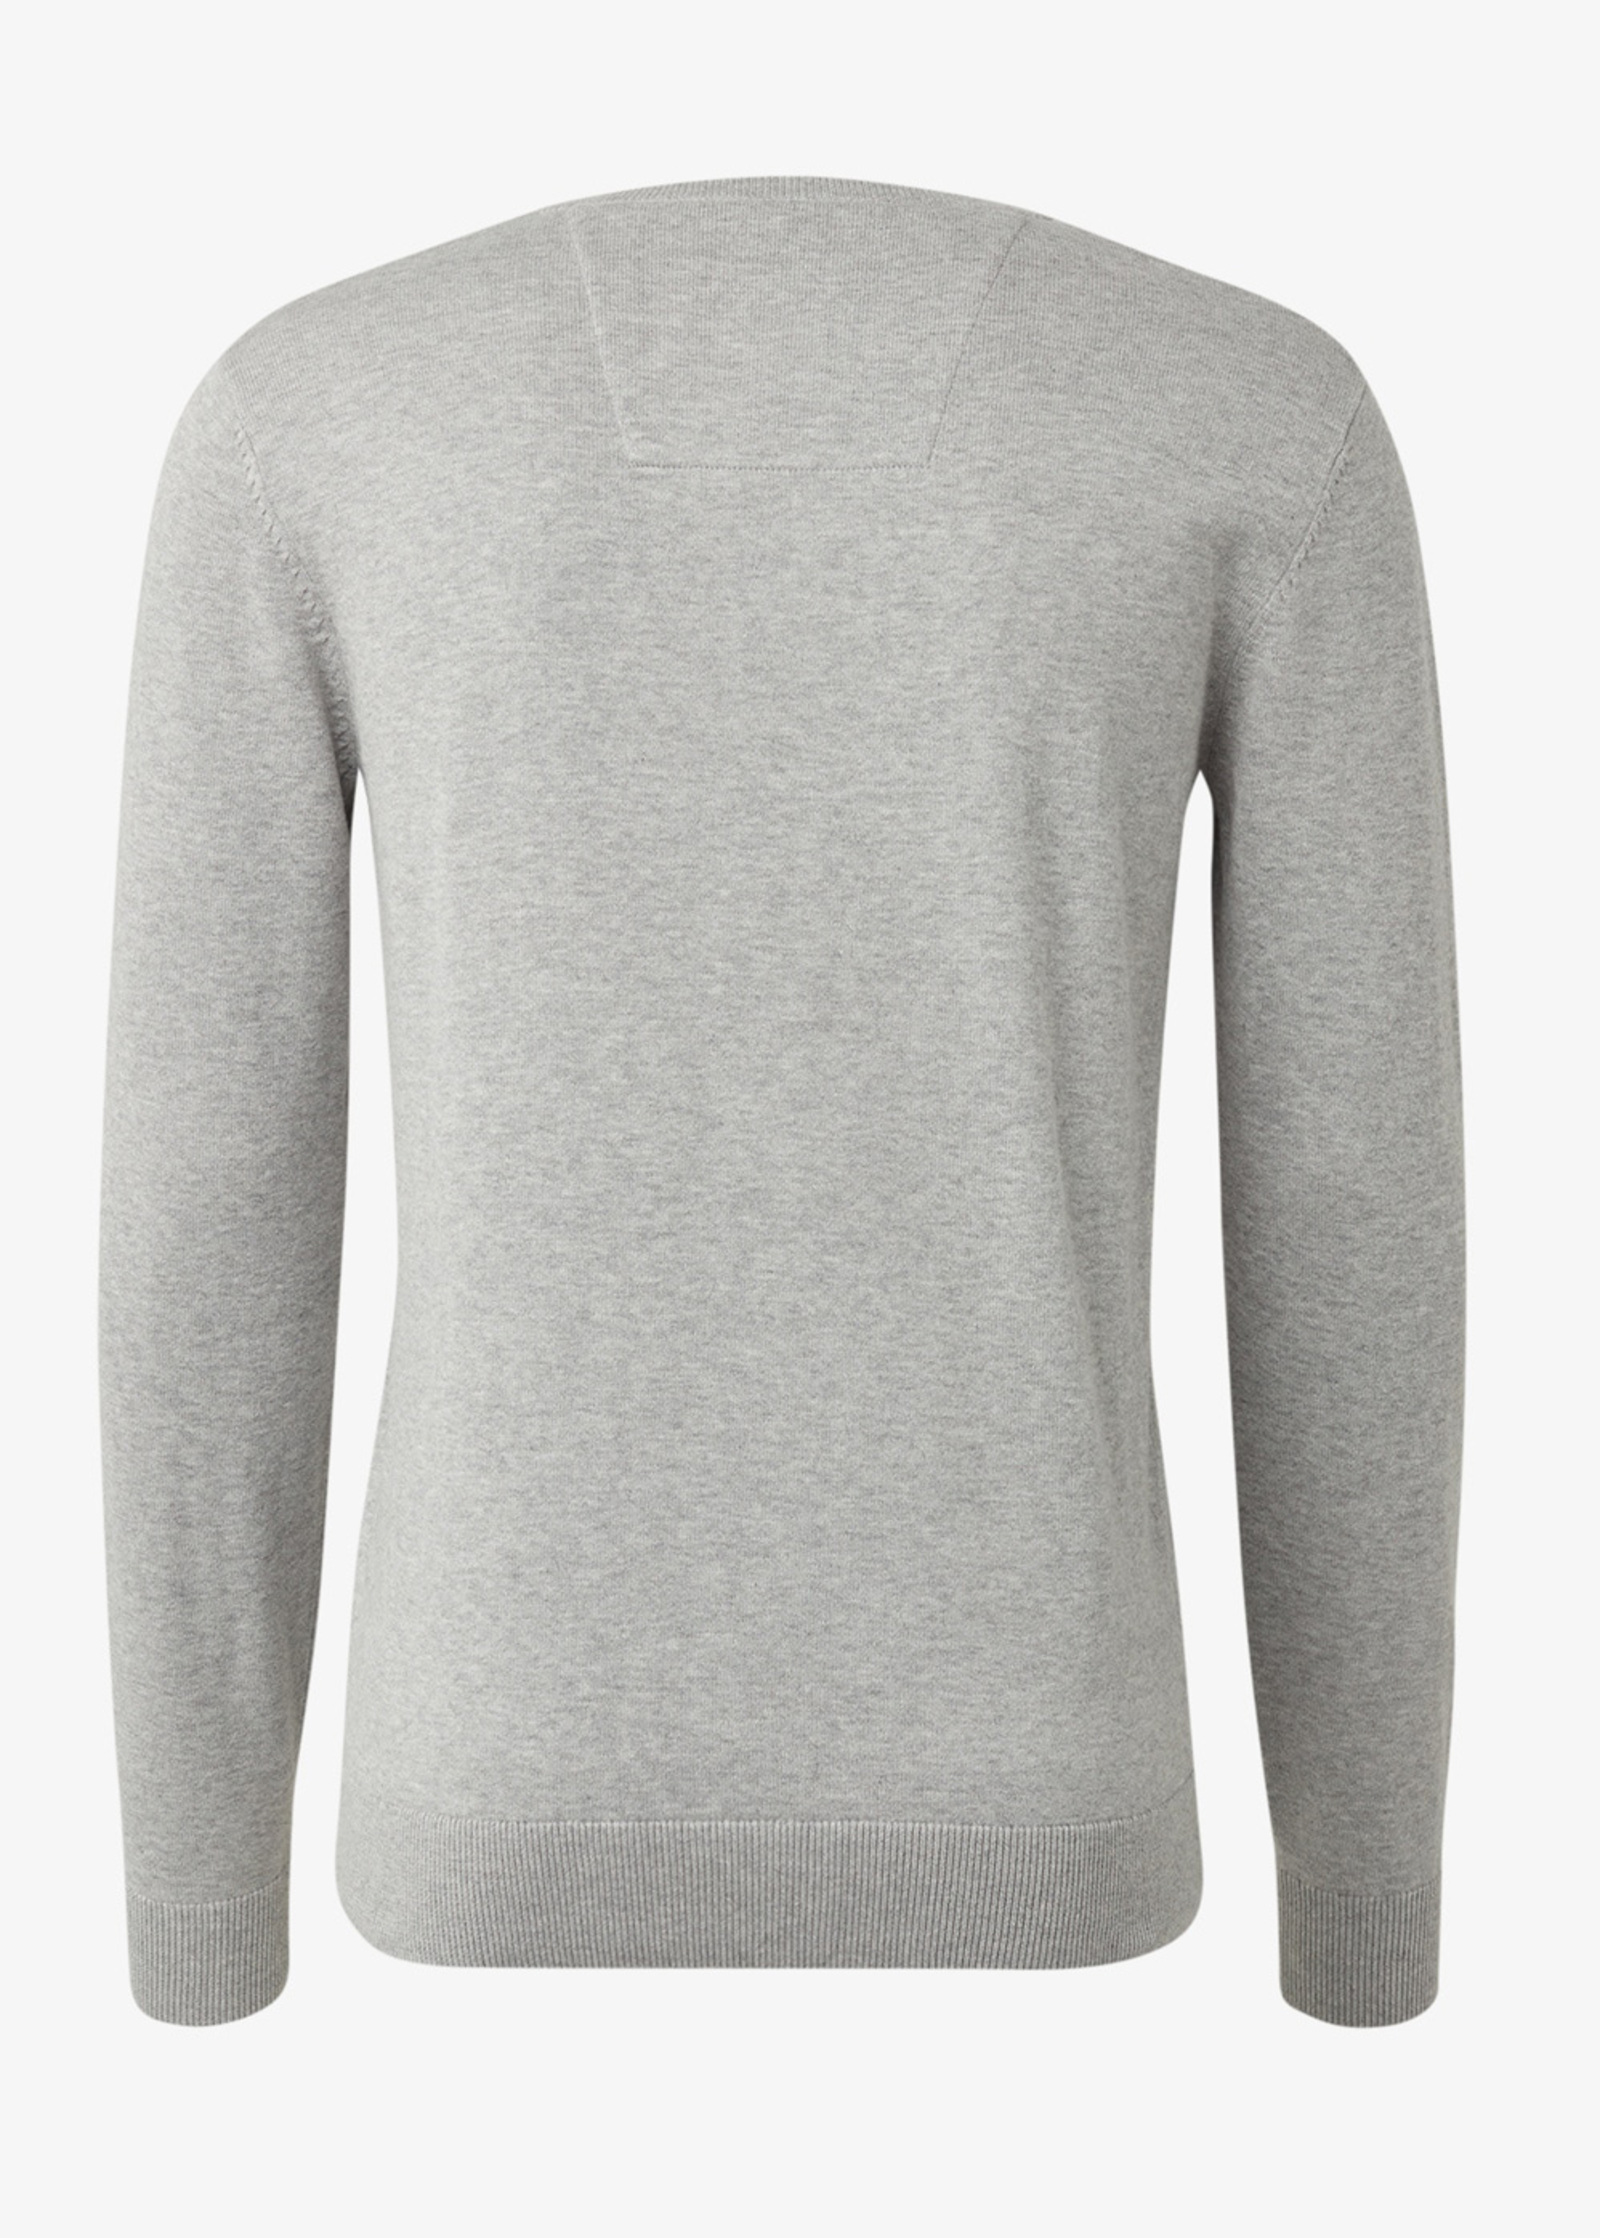 Soft Melange S Jumper Knitted Grey Tom Light Tailor Simple 1012819-14427 Size -